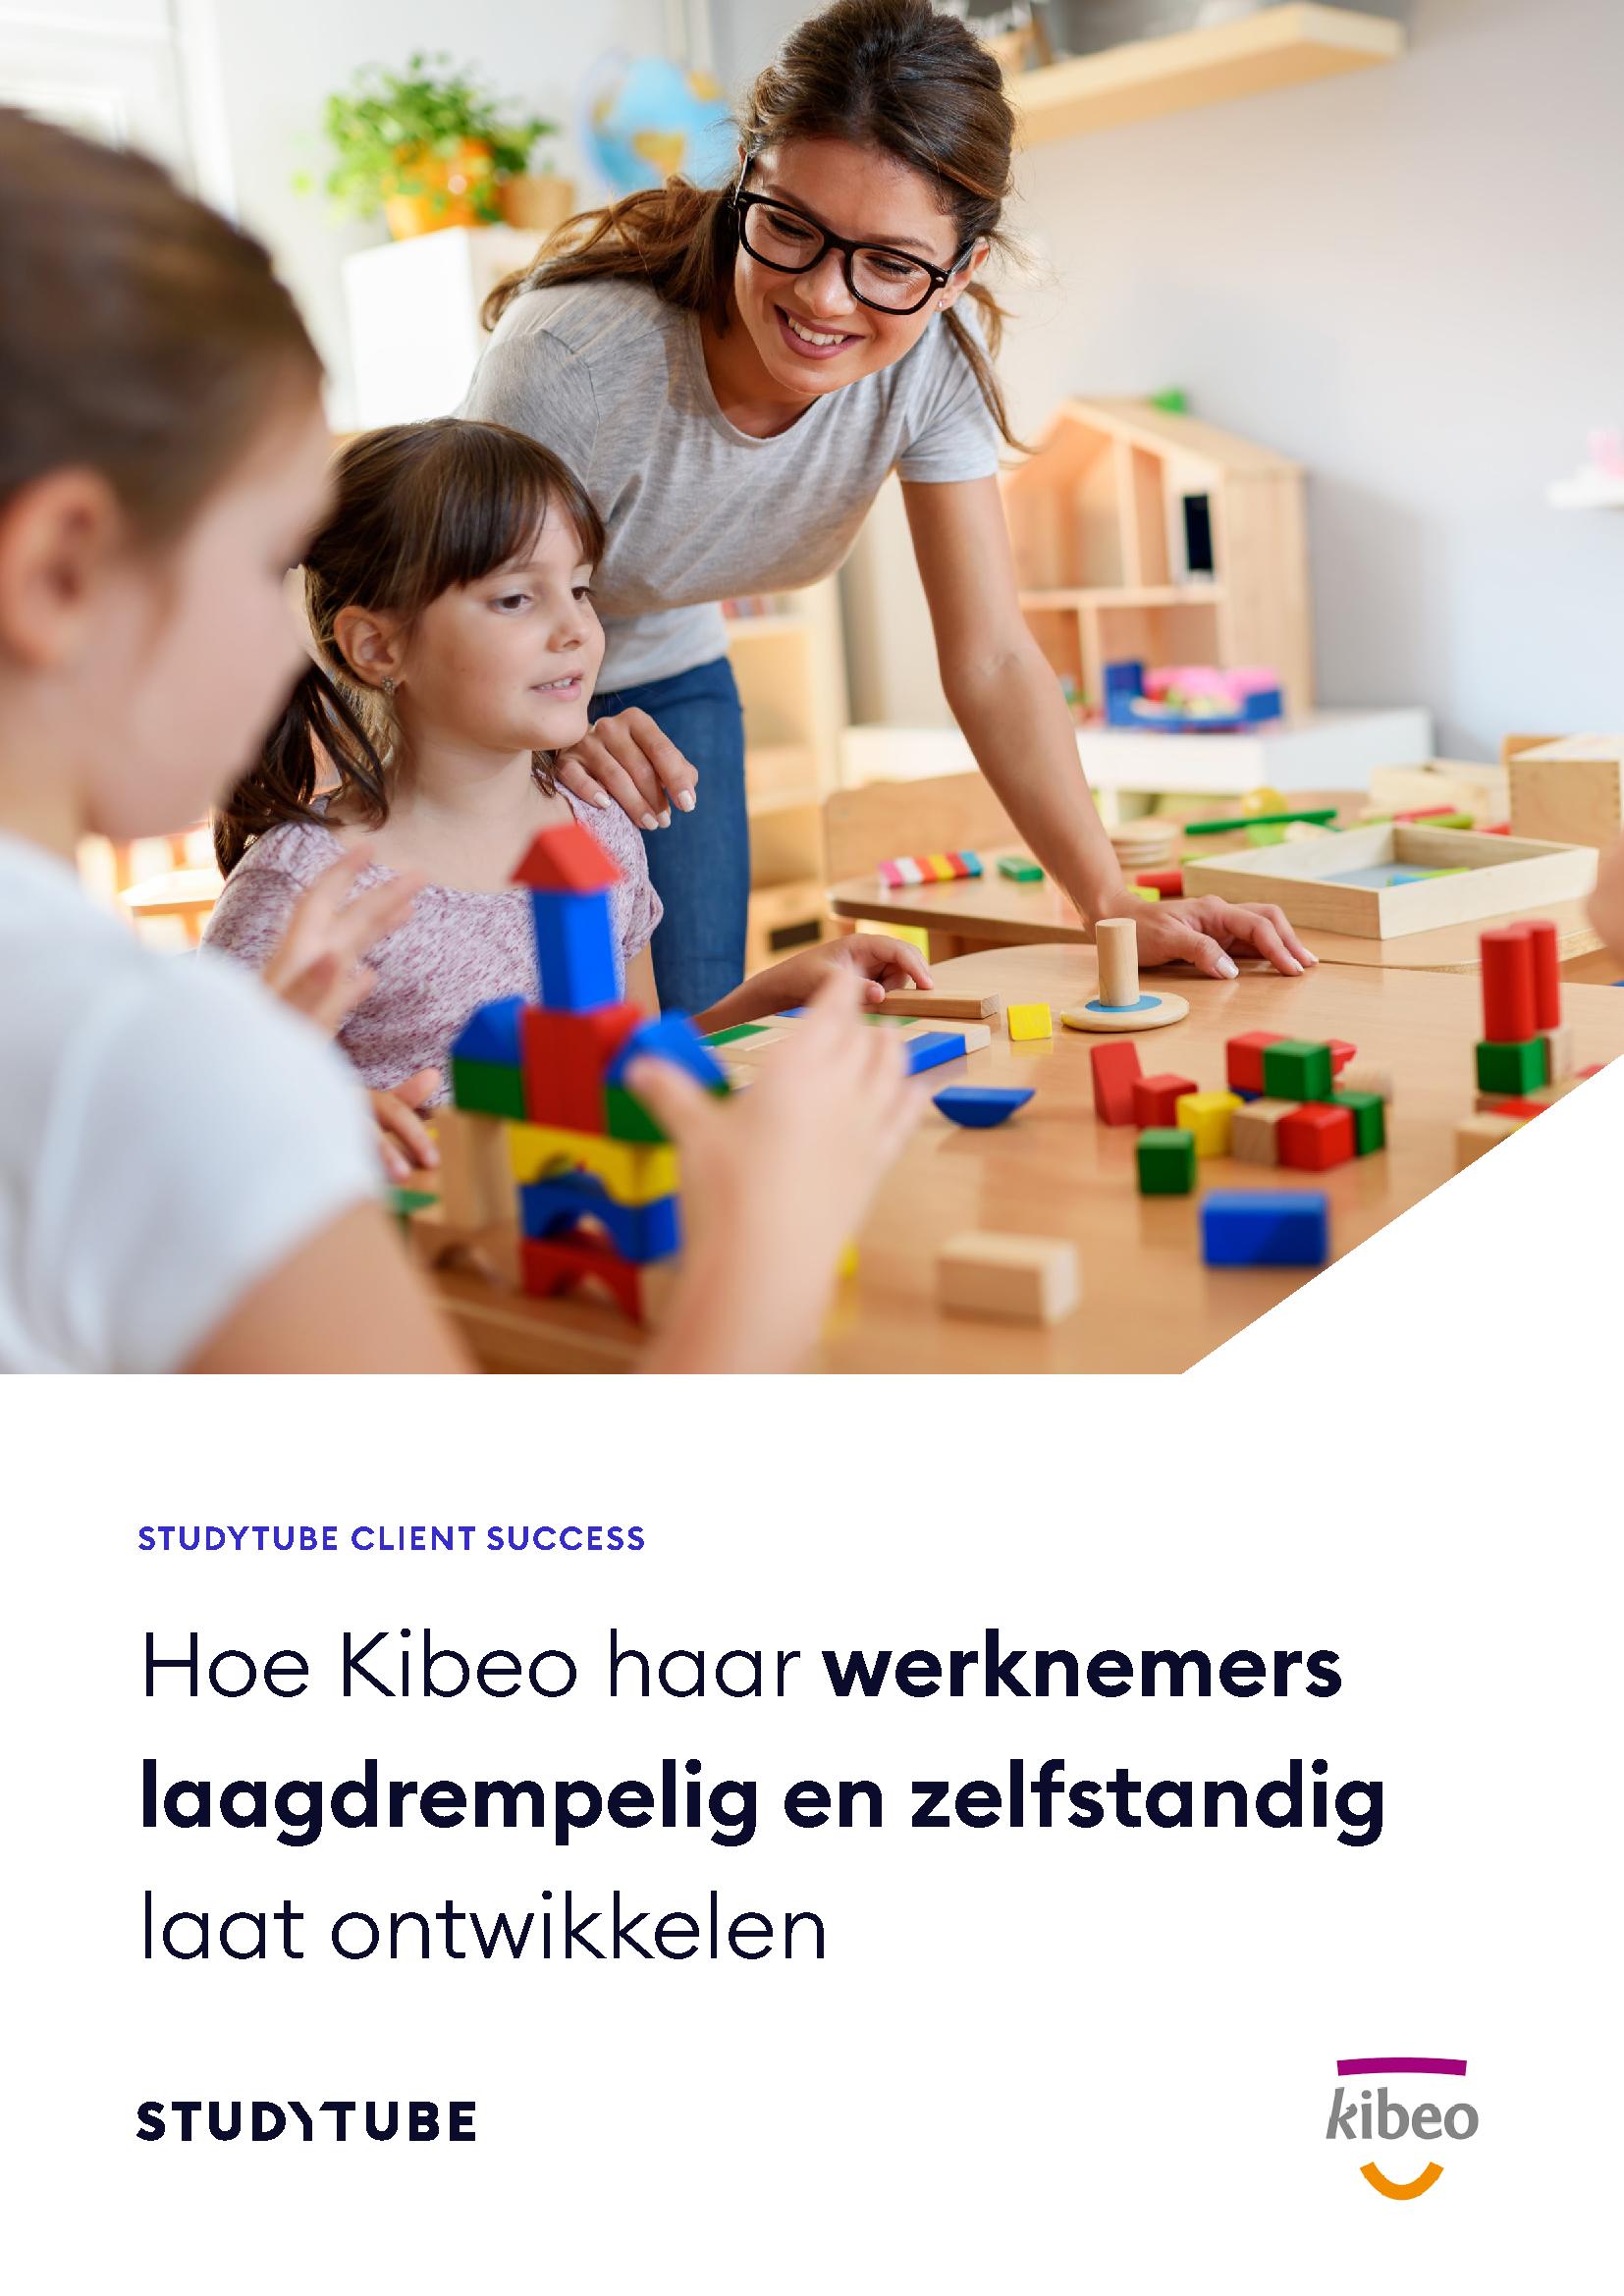 Hoe Kibeo haar werknemers laagdrempelig en zelfstandig laat ontwikkelen, case study cover